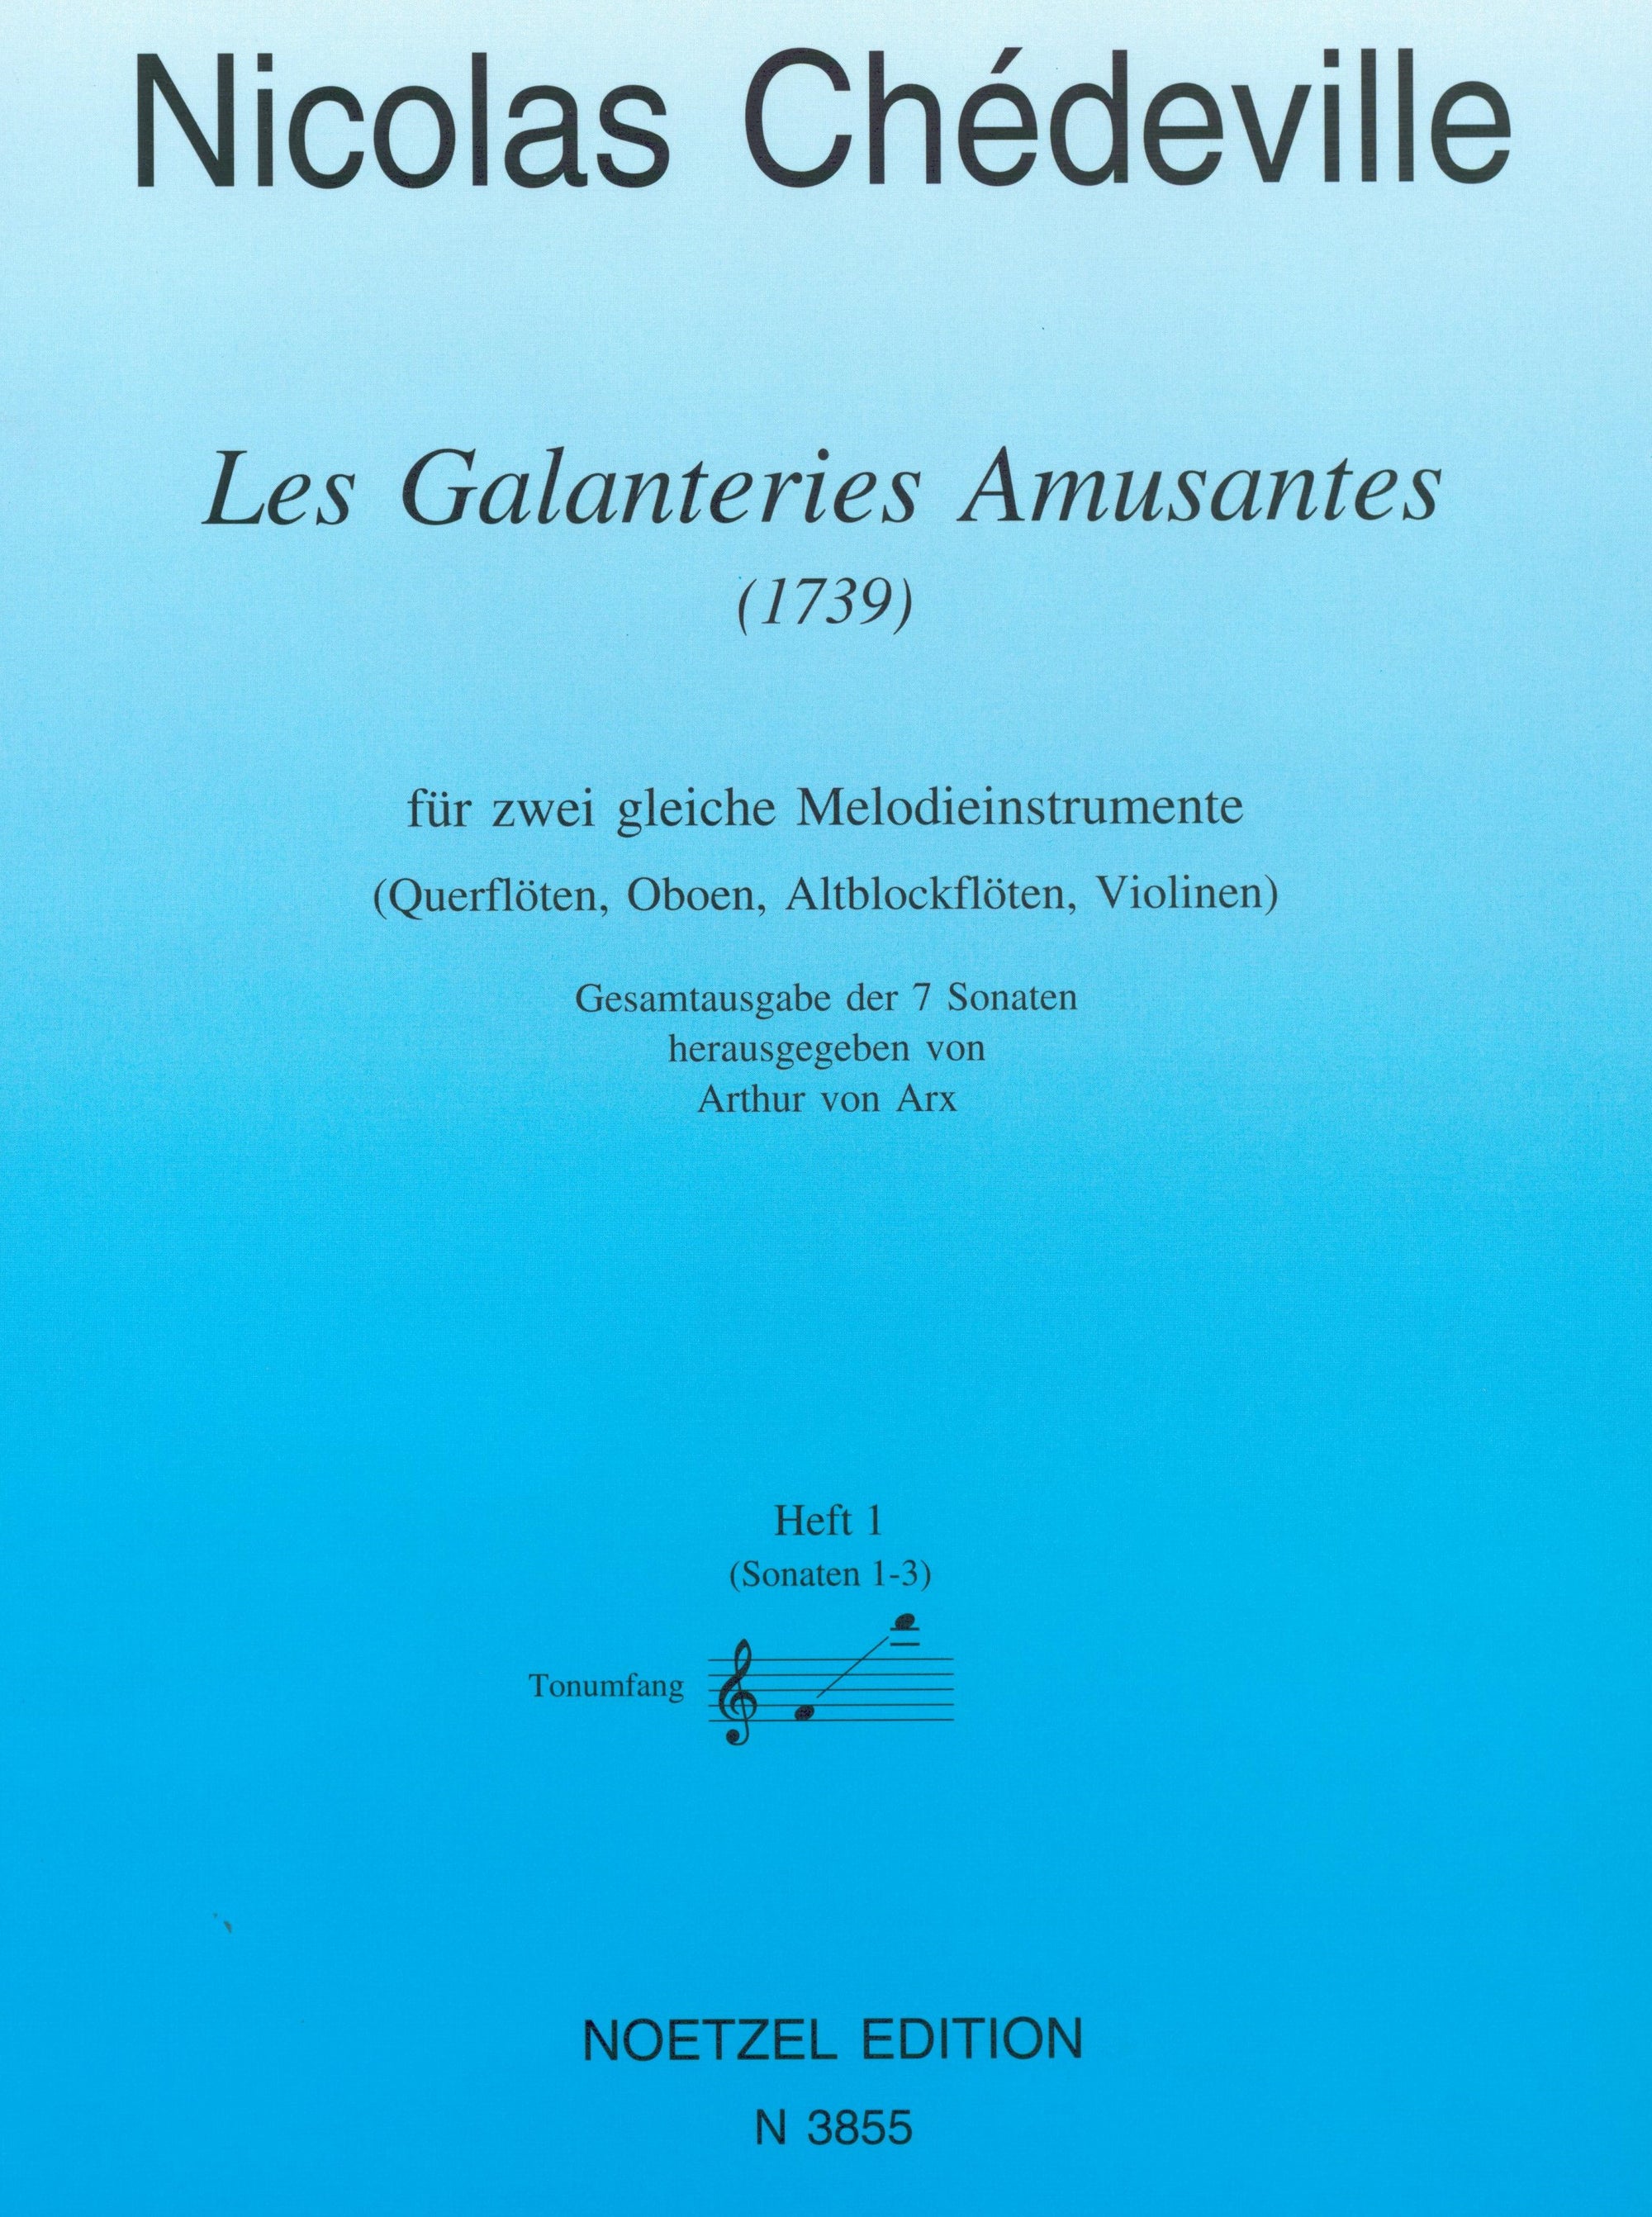 Chédeville: Les Galanteries Amusantes, Op. 8 - Volume 1 (Nos. 1-3)